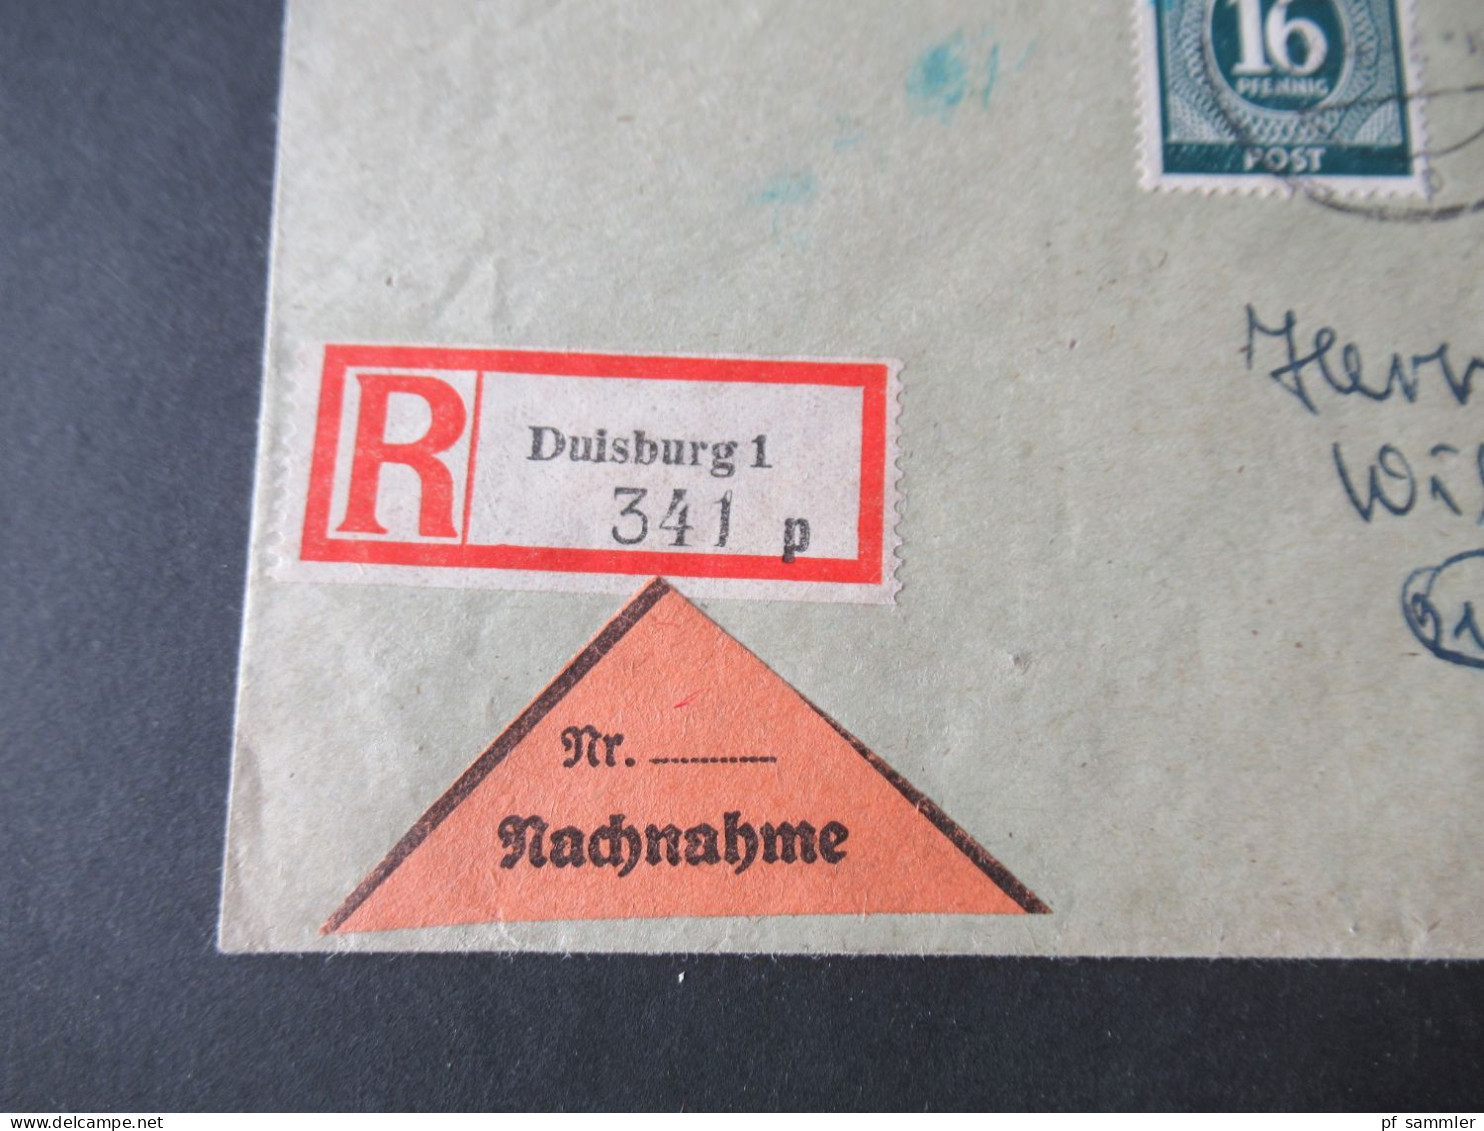 Kontrollrat 03.4.1947 Einschreiben Nachnahme Duisburg 1 Nach Referinghausen Sauerland - Storia Postale